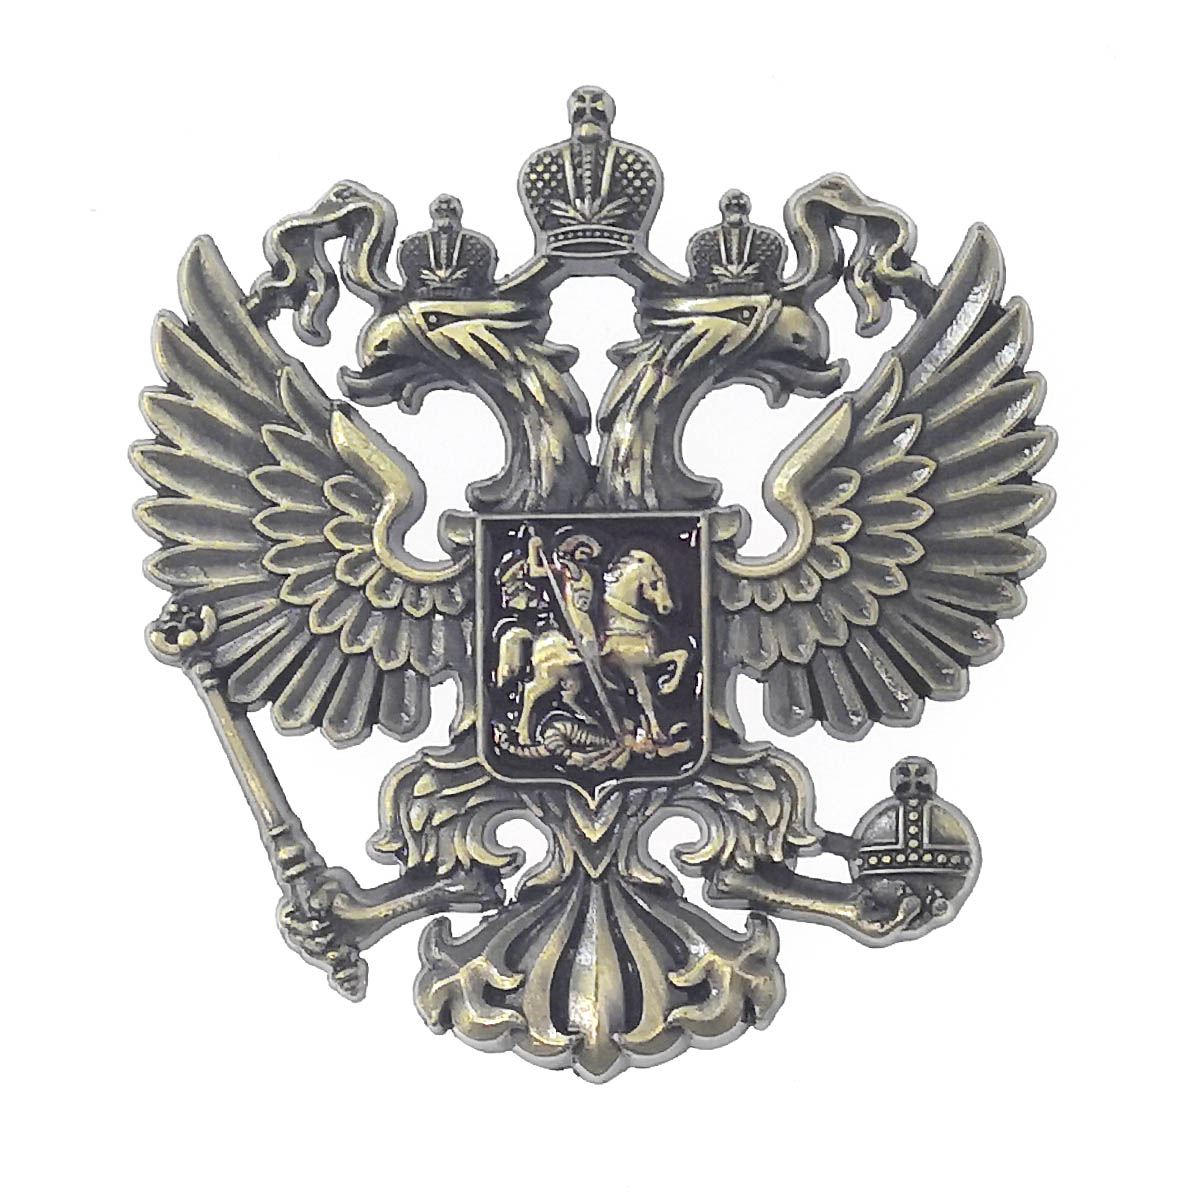 Наклейка ГЕРБ РОССИИ металлическая, цвет бронзовый